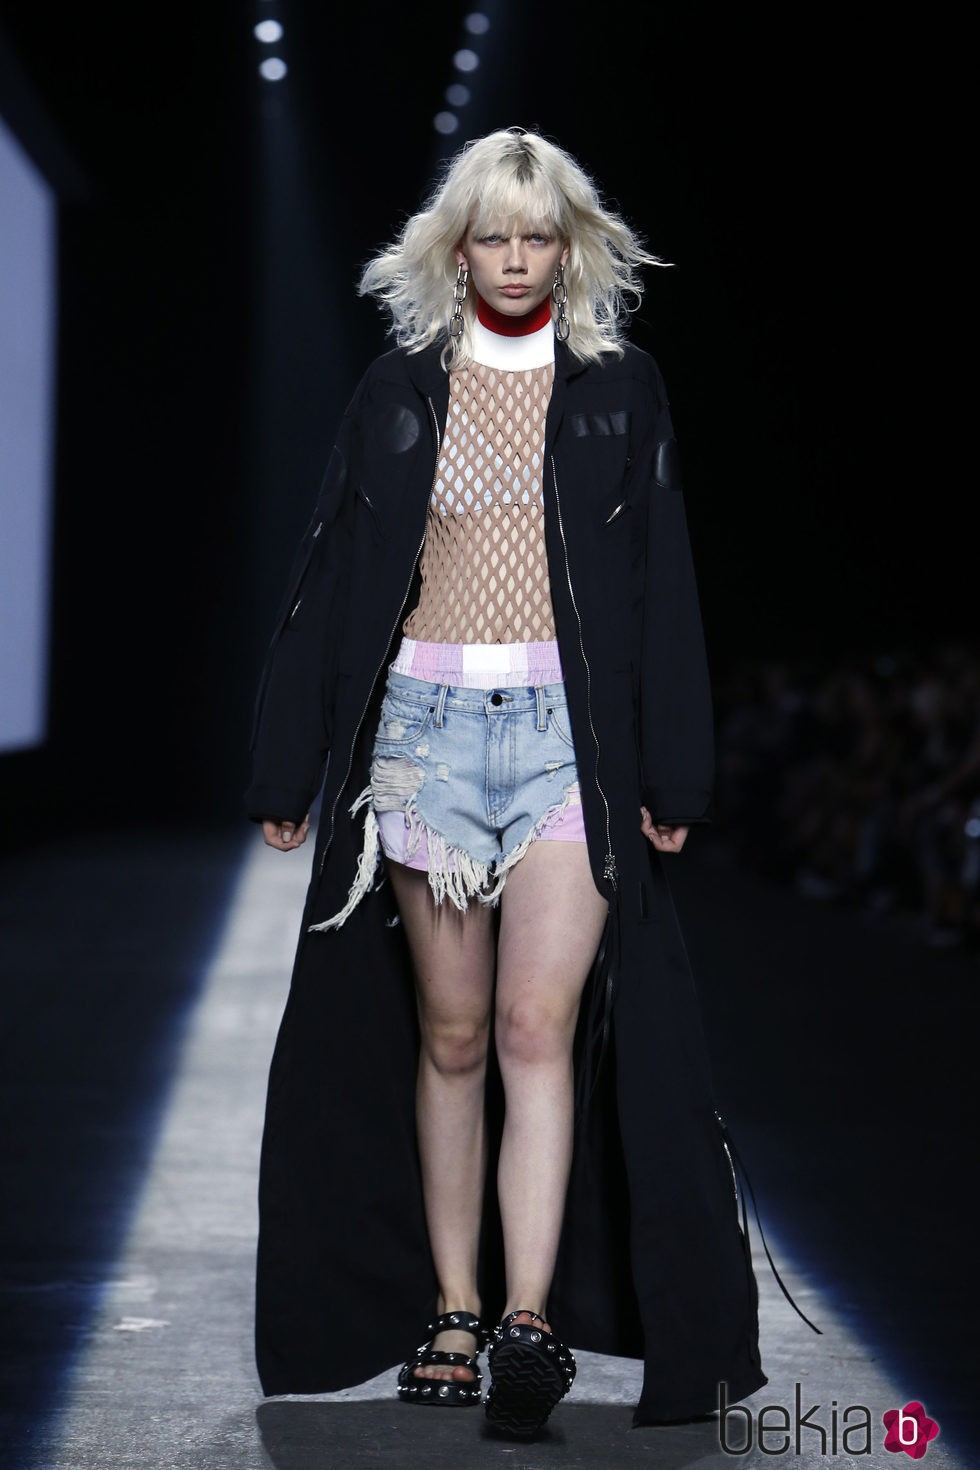 Abrigo largo negro de la colección primavera/verano 2016 de Alexander Wang en Nueva York Fashion Week